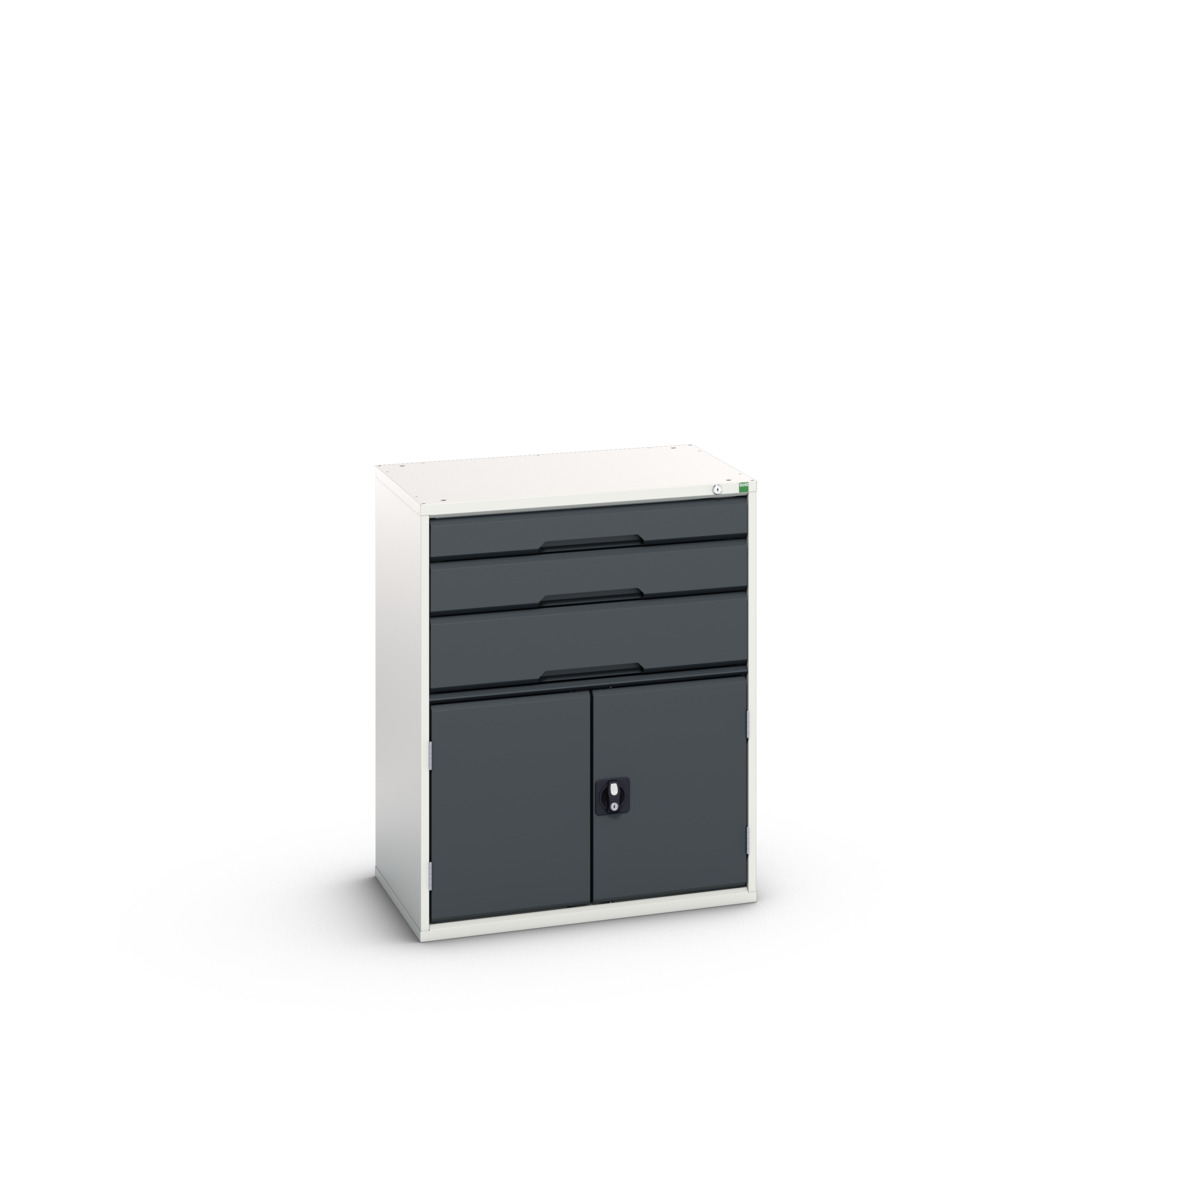 16925461.19 - verso drawer-door cabinet